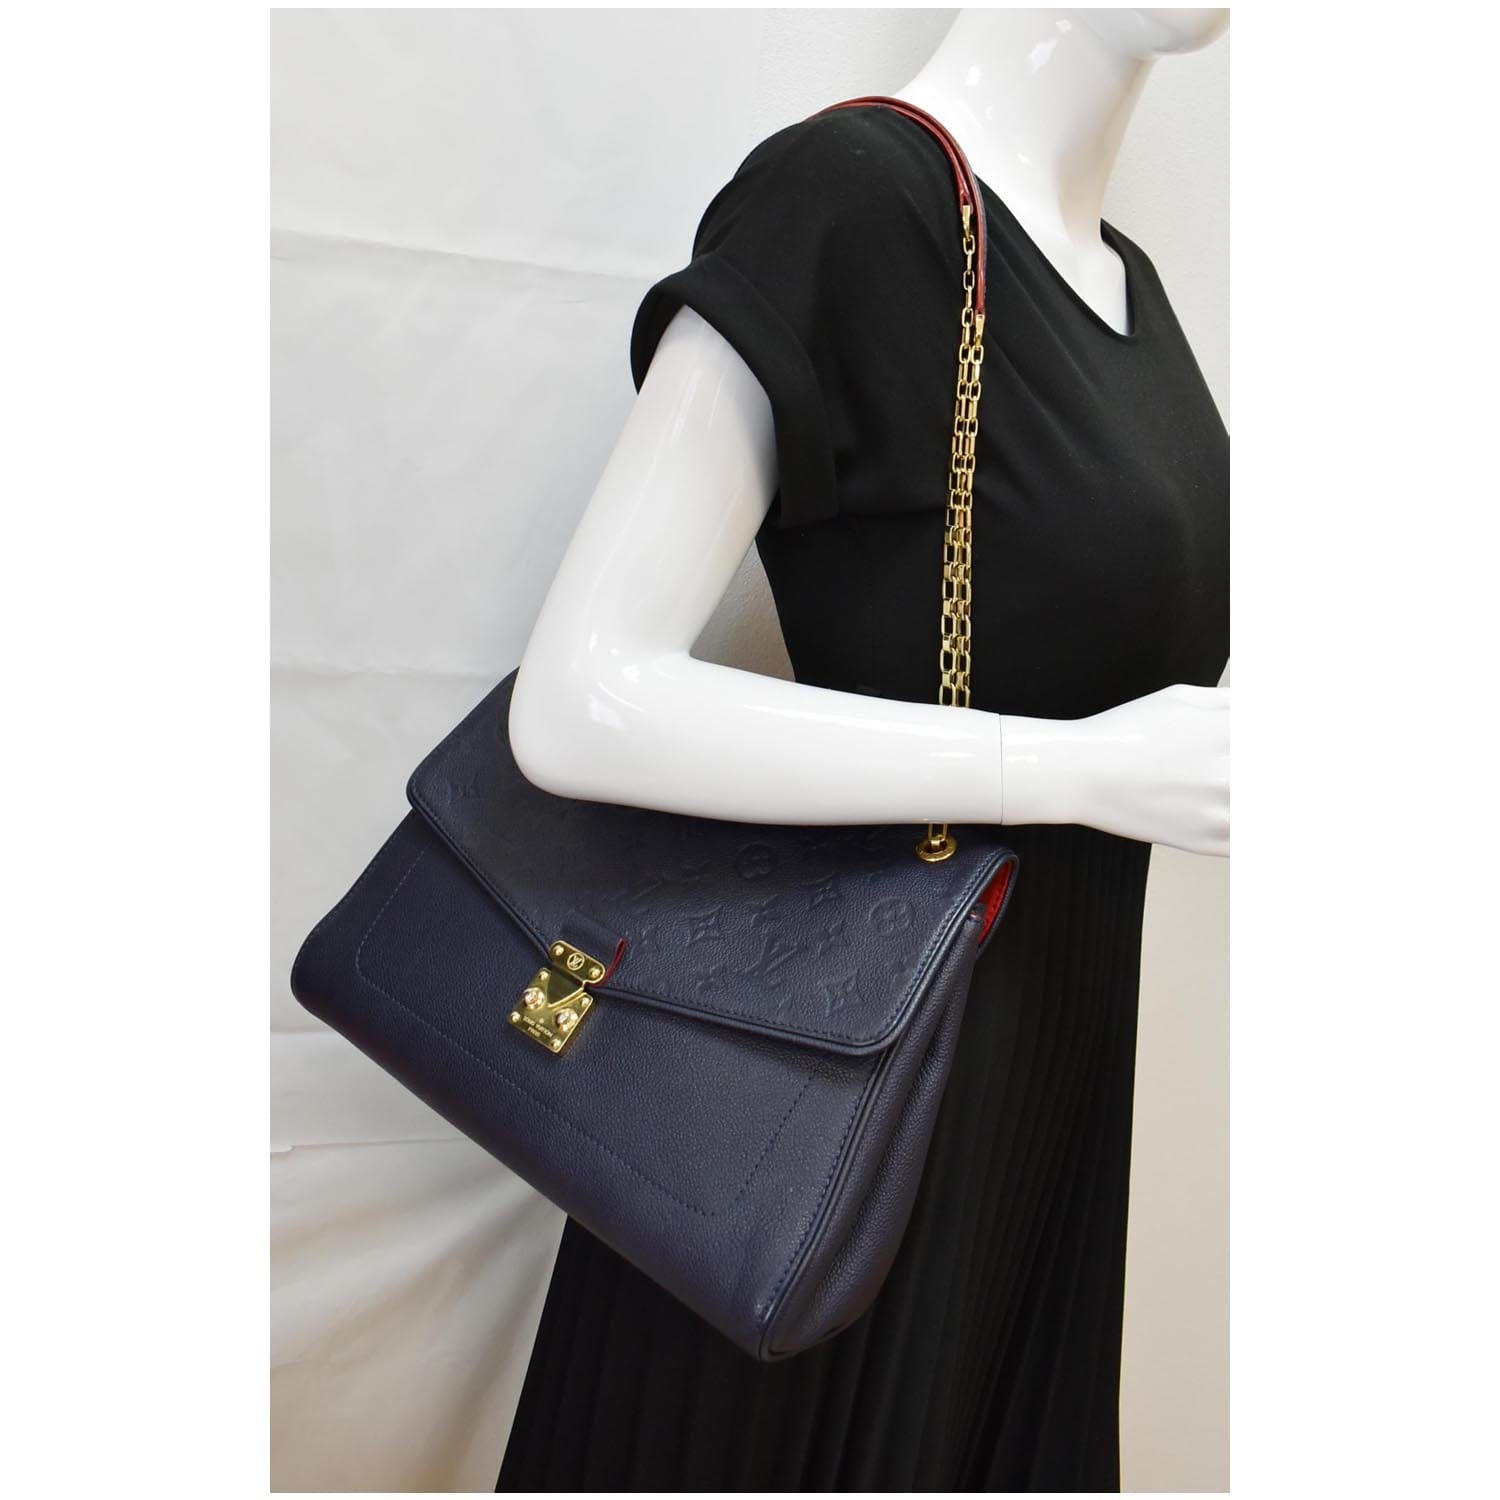 Louis Vuitton, Bags, Authentic Louis Vuitton St Germain Pm